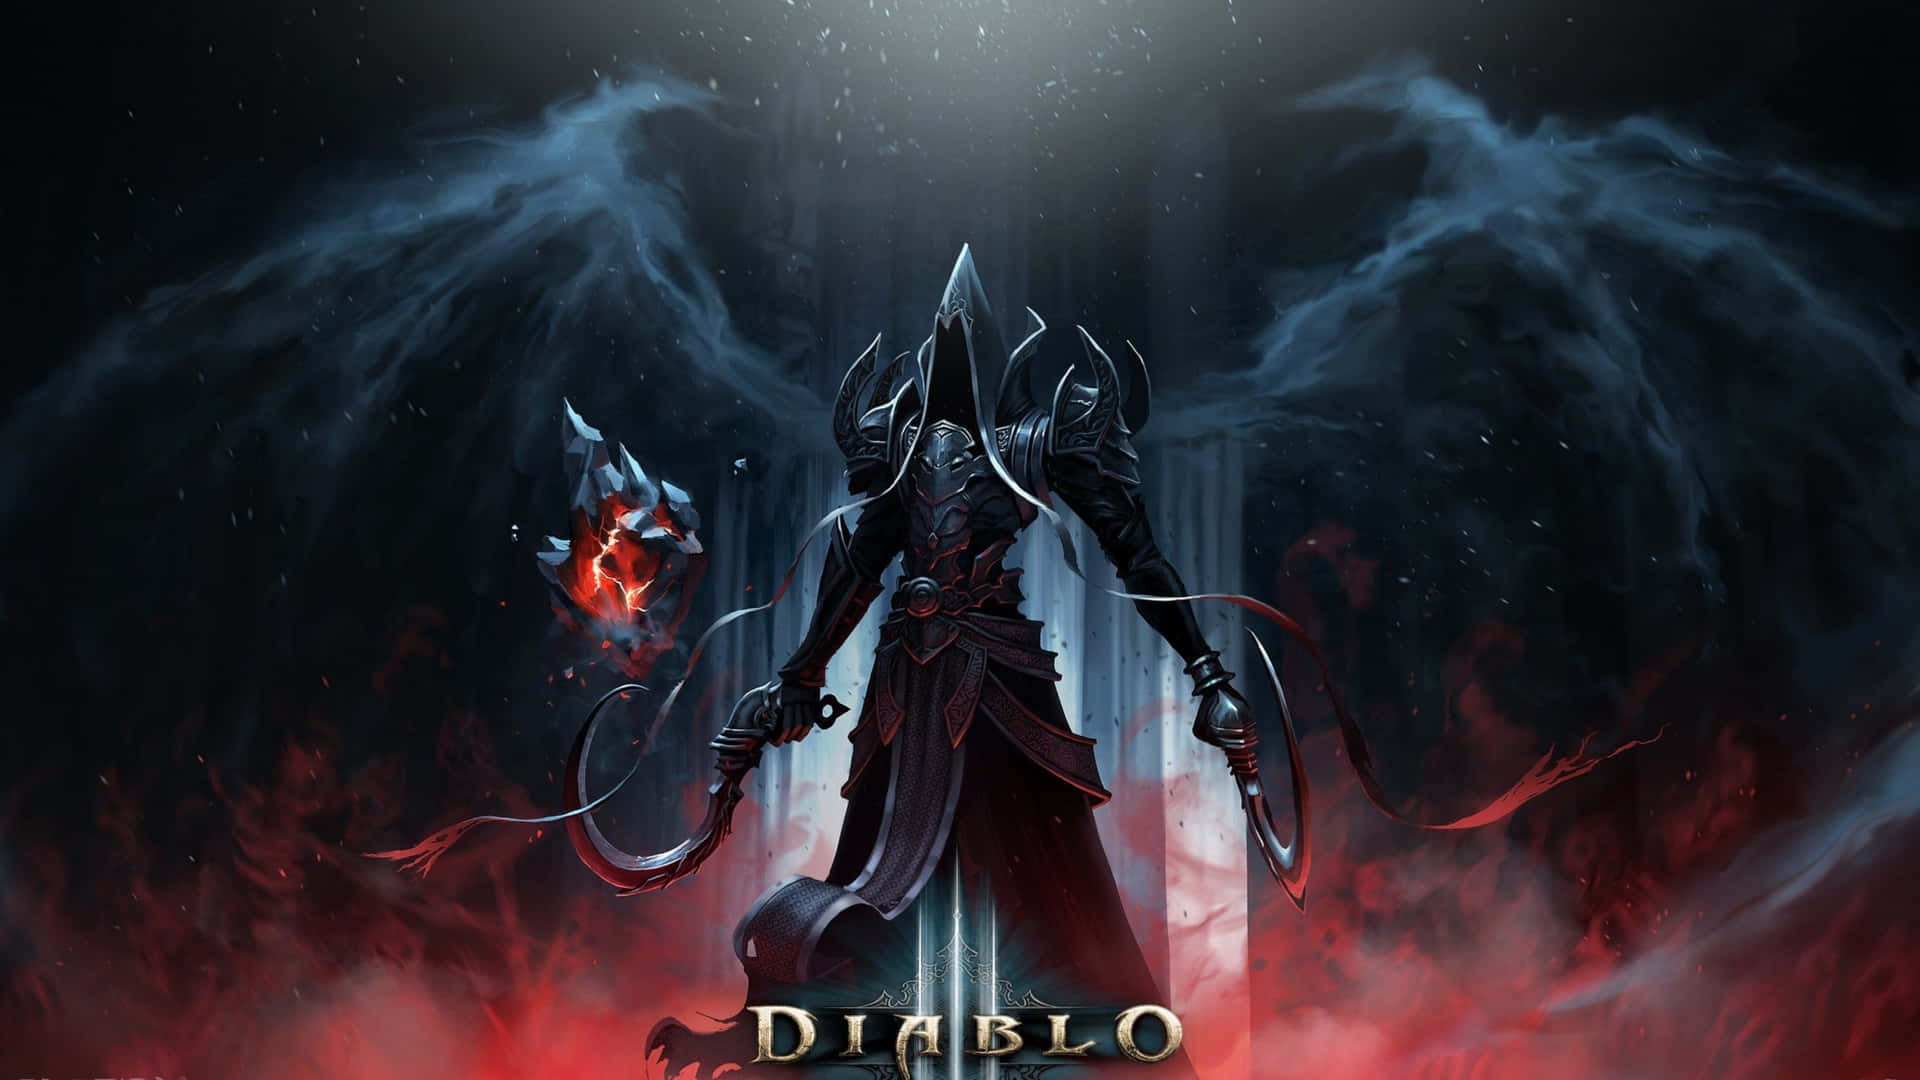 Diablo Video Game 4k Reaper Of Souls Wallpaper